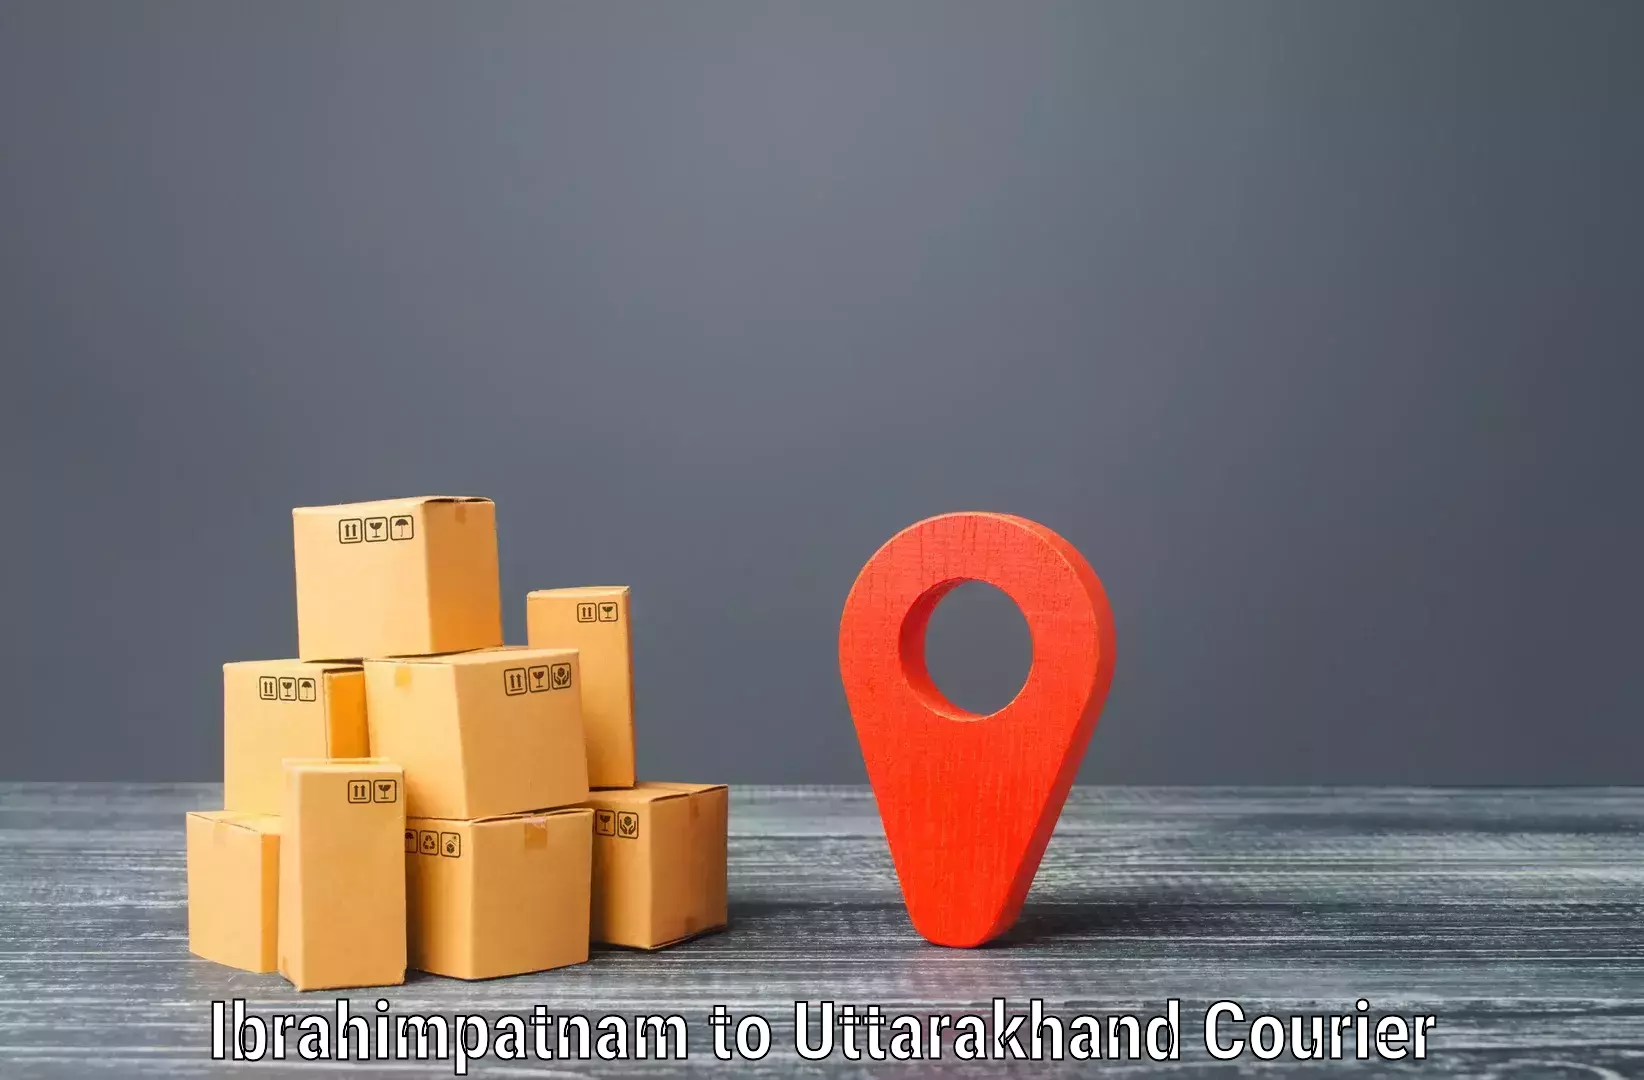 Bulk shipment Ibrahimpatnam to Doiwala